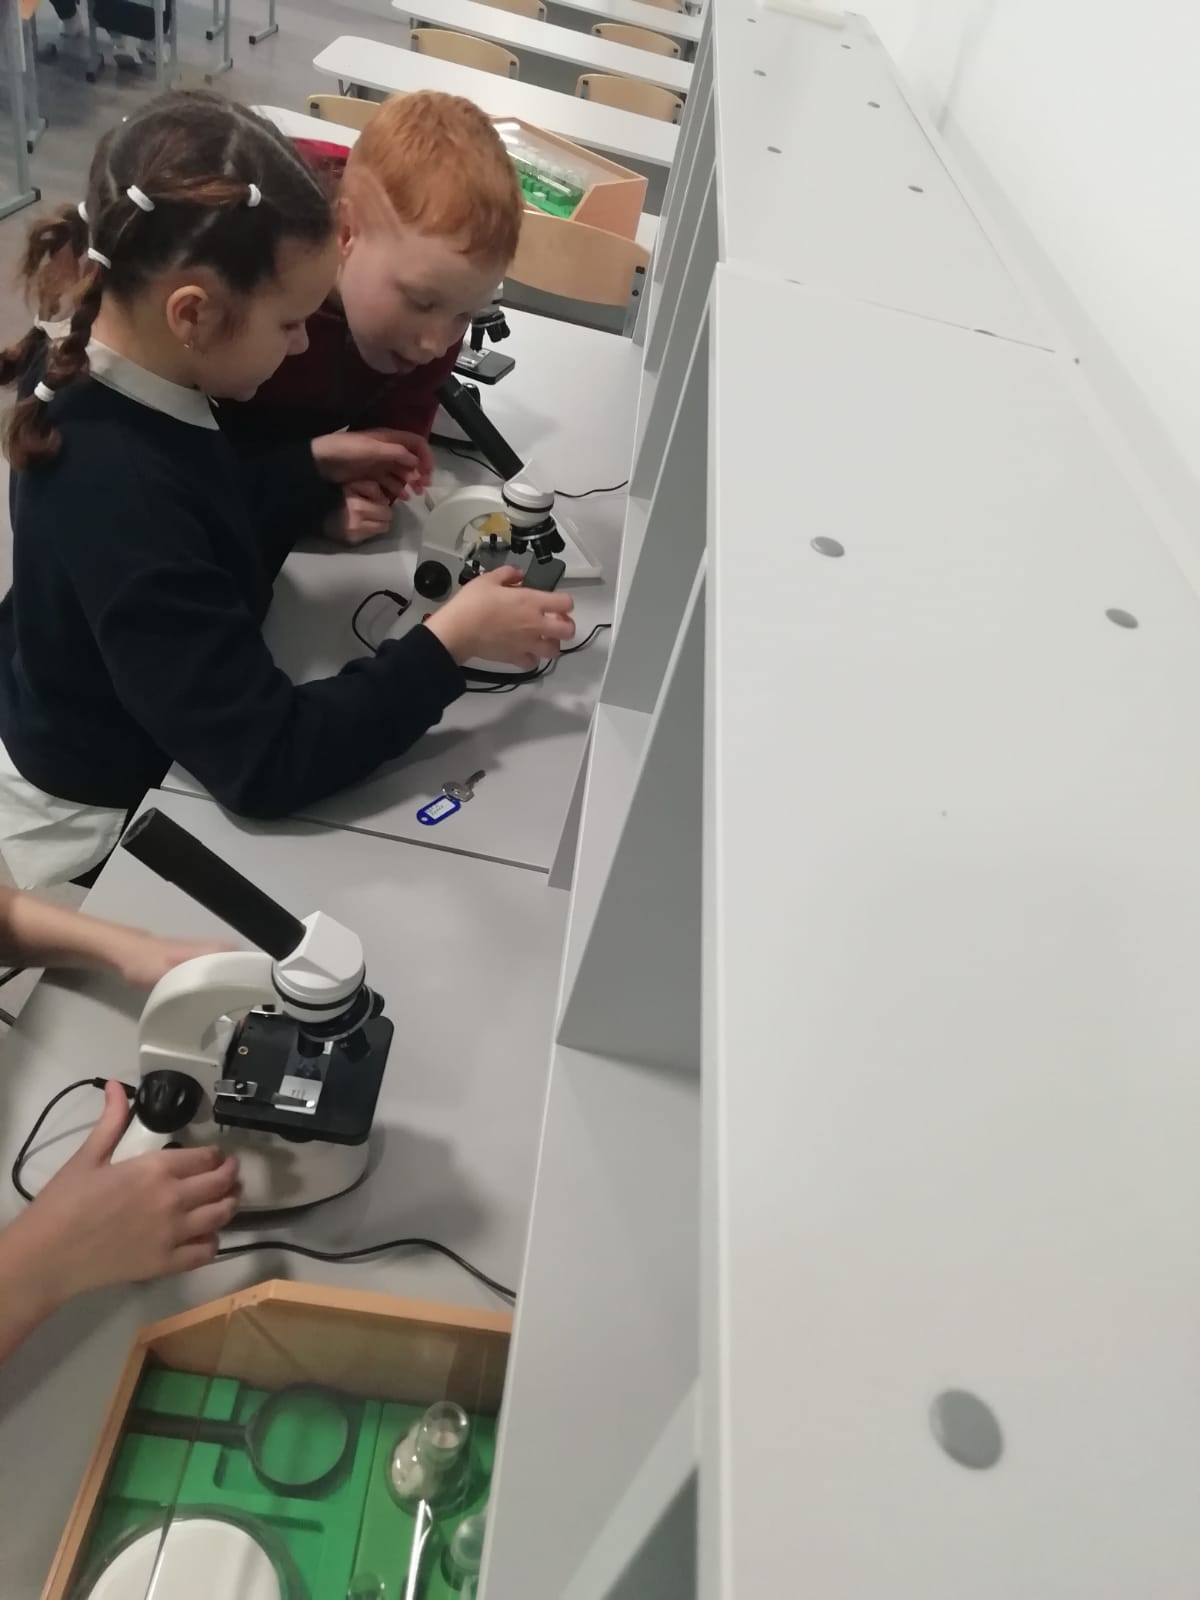 22 февраля Работа с микроскопом - возможность увидеть одноклеточные организмы. Учащиеся 4А класса, освоили навыки работы с электронным микроскопом в кабинете биологии Центра образования Точка Роста.